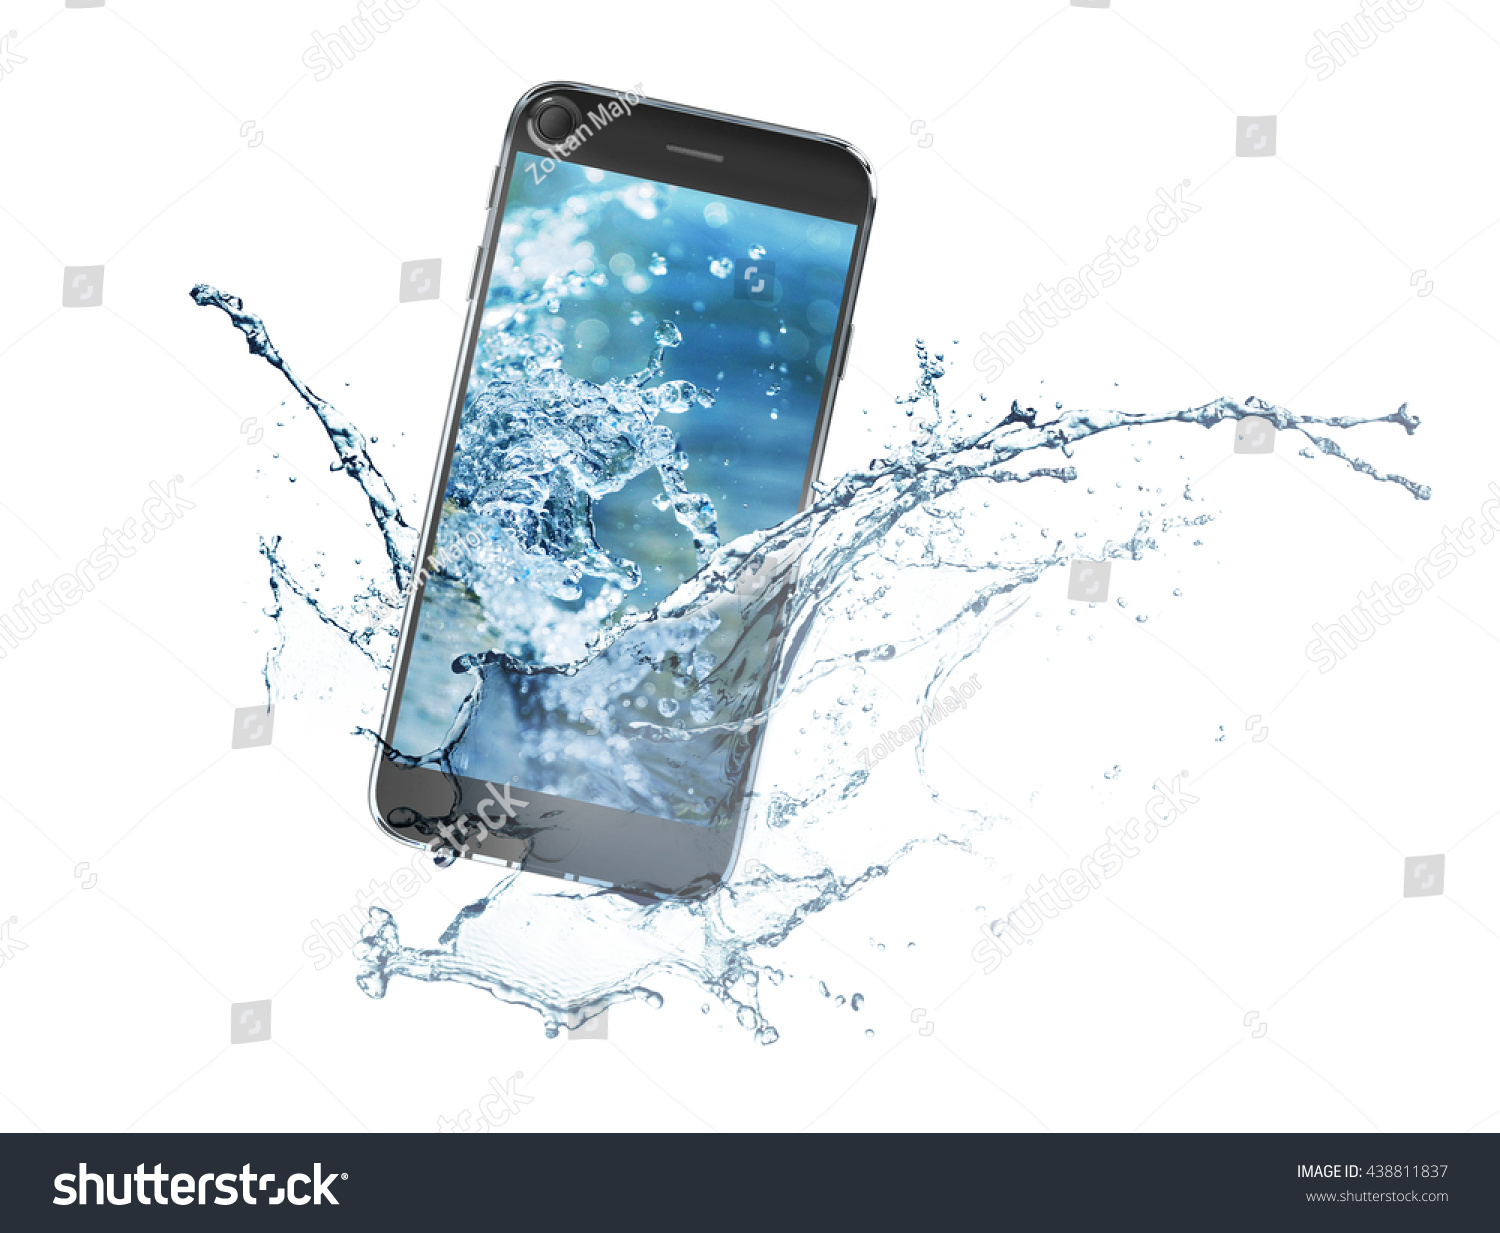 Звук для телефона от воды. Смартфон в воде. Смартфон падает в воду. Айфон в воде. Изображение смартфона.